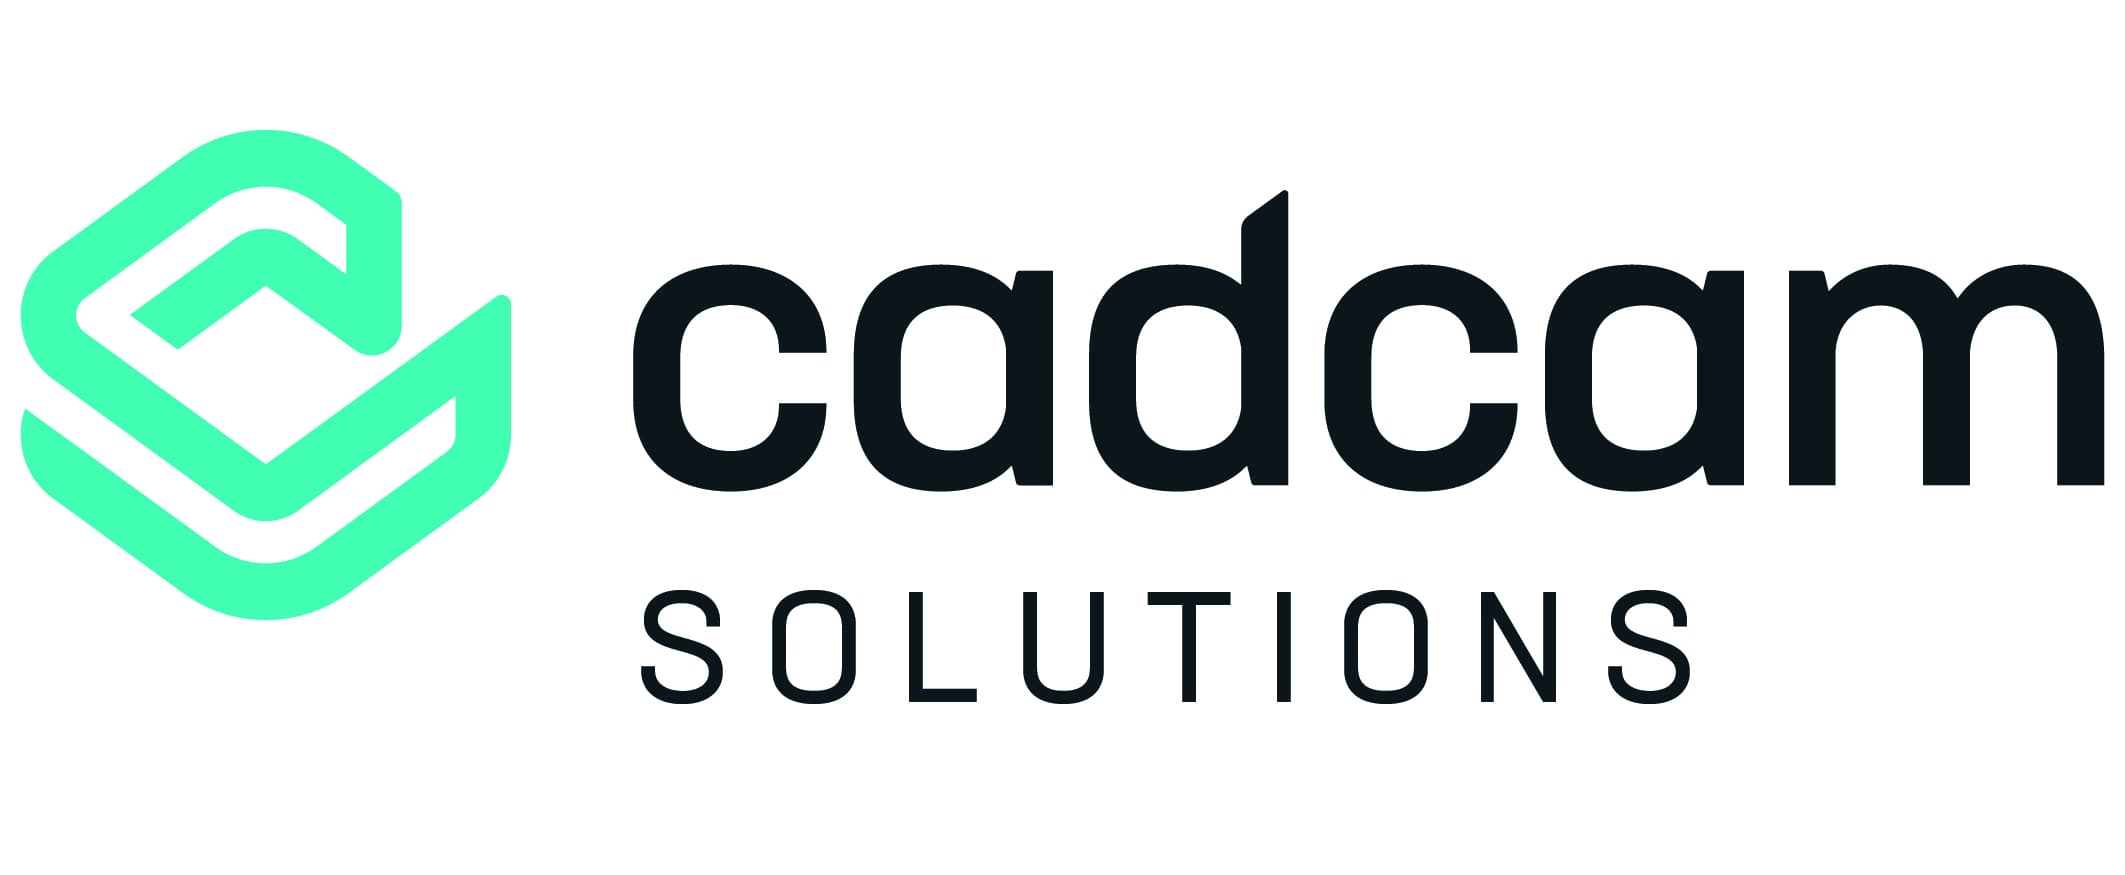 CADCAM Solutions logo